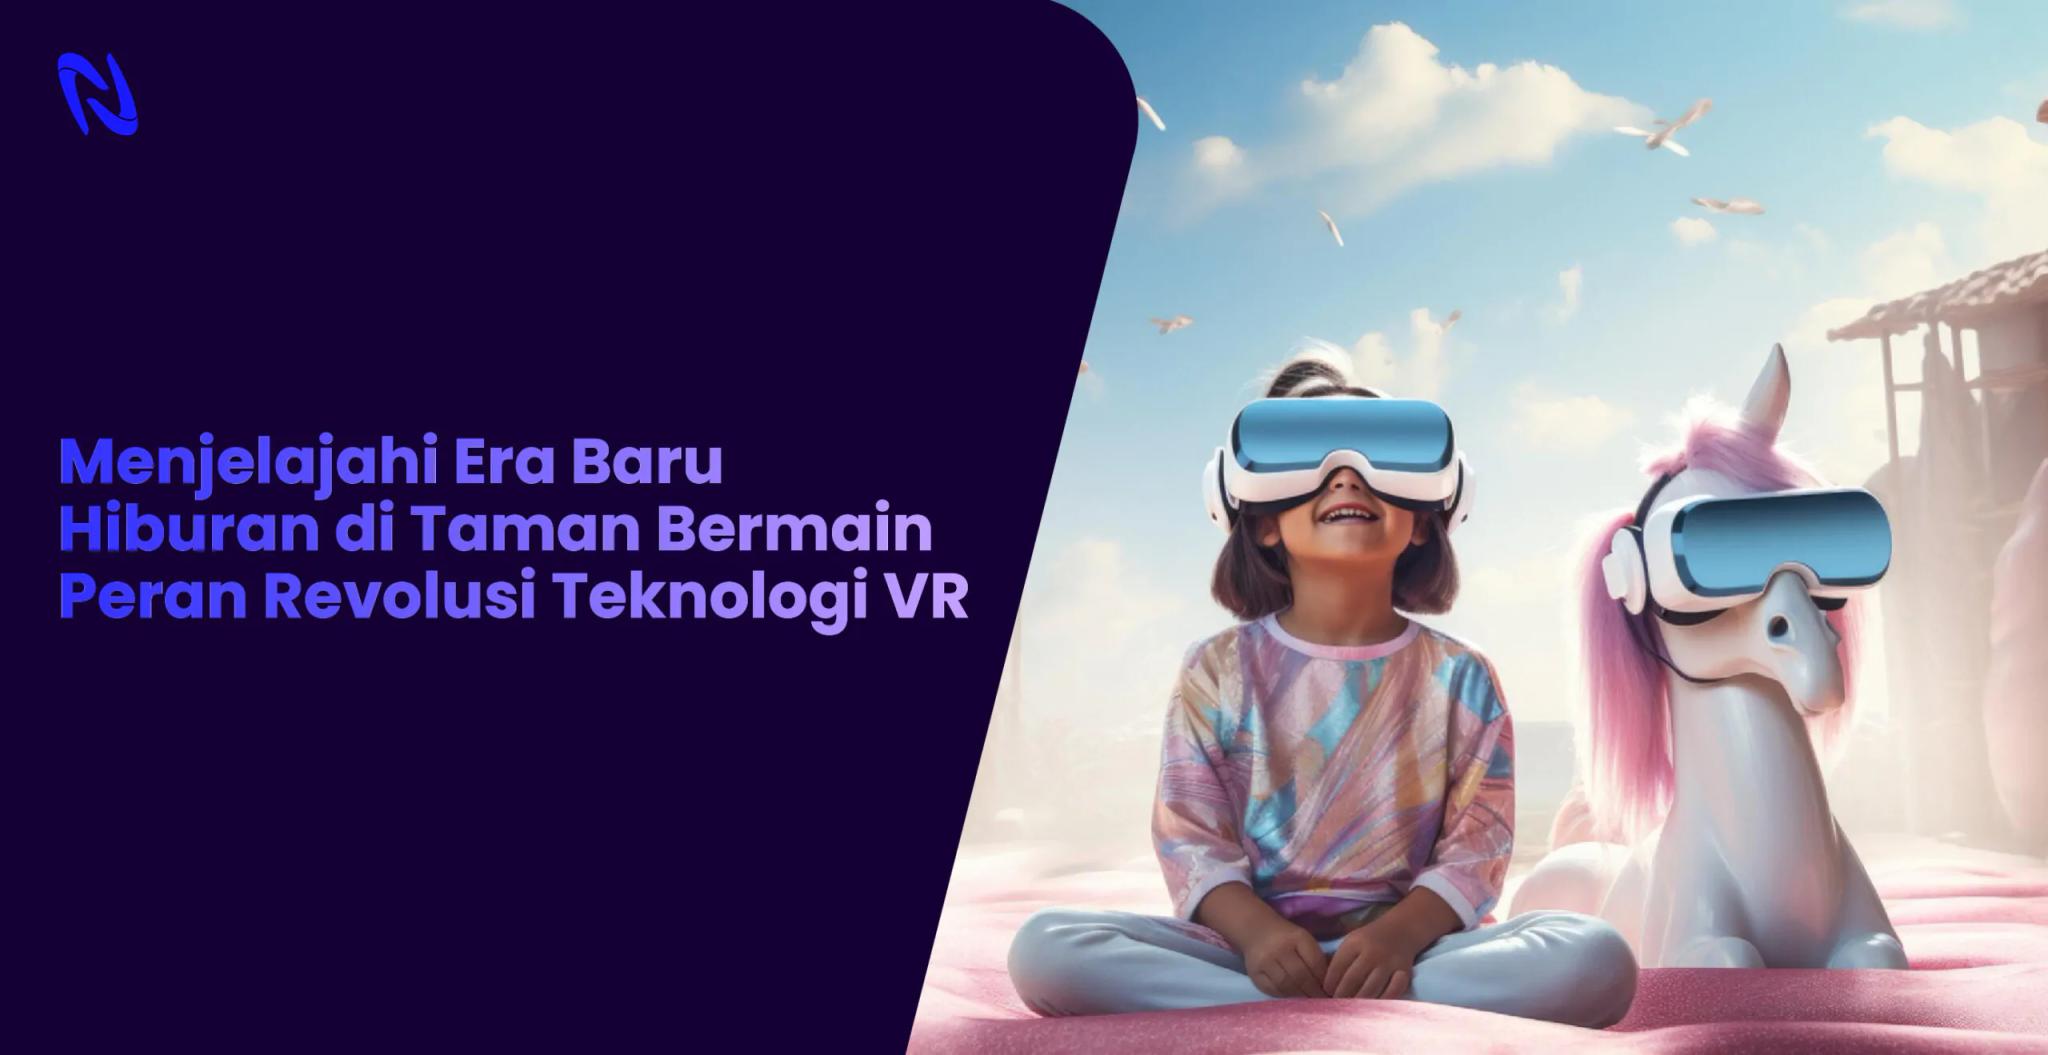 Menjelajahi Era Baru Hiburan di Taman Bermain: Peran Revolusi Teknologi VR